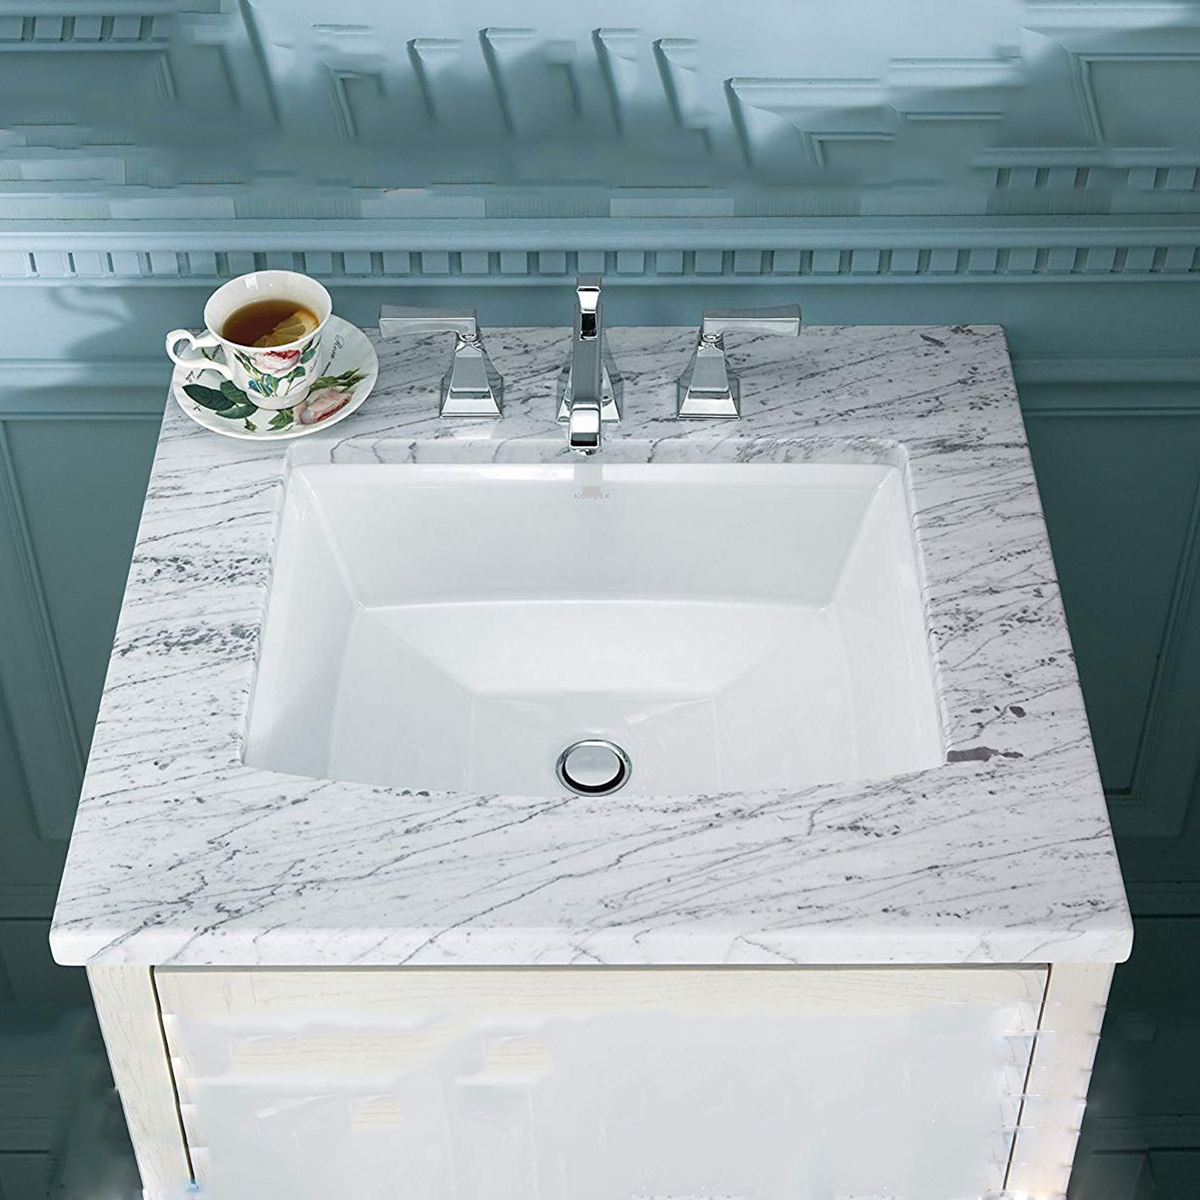 Aquacubic-fregadero blanco de diseño moderno para el hogar, lavabos rectangulares de cerámica para baño, lavabos bajo encimera para lavar a mano 